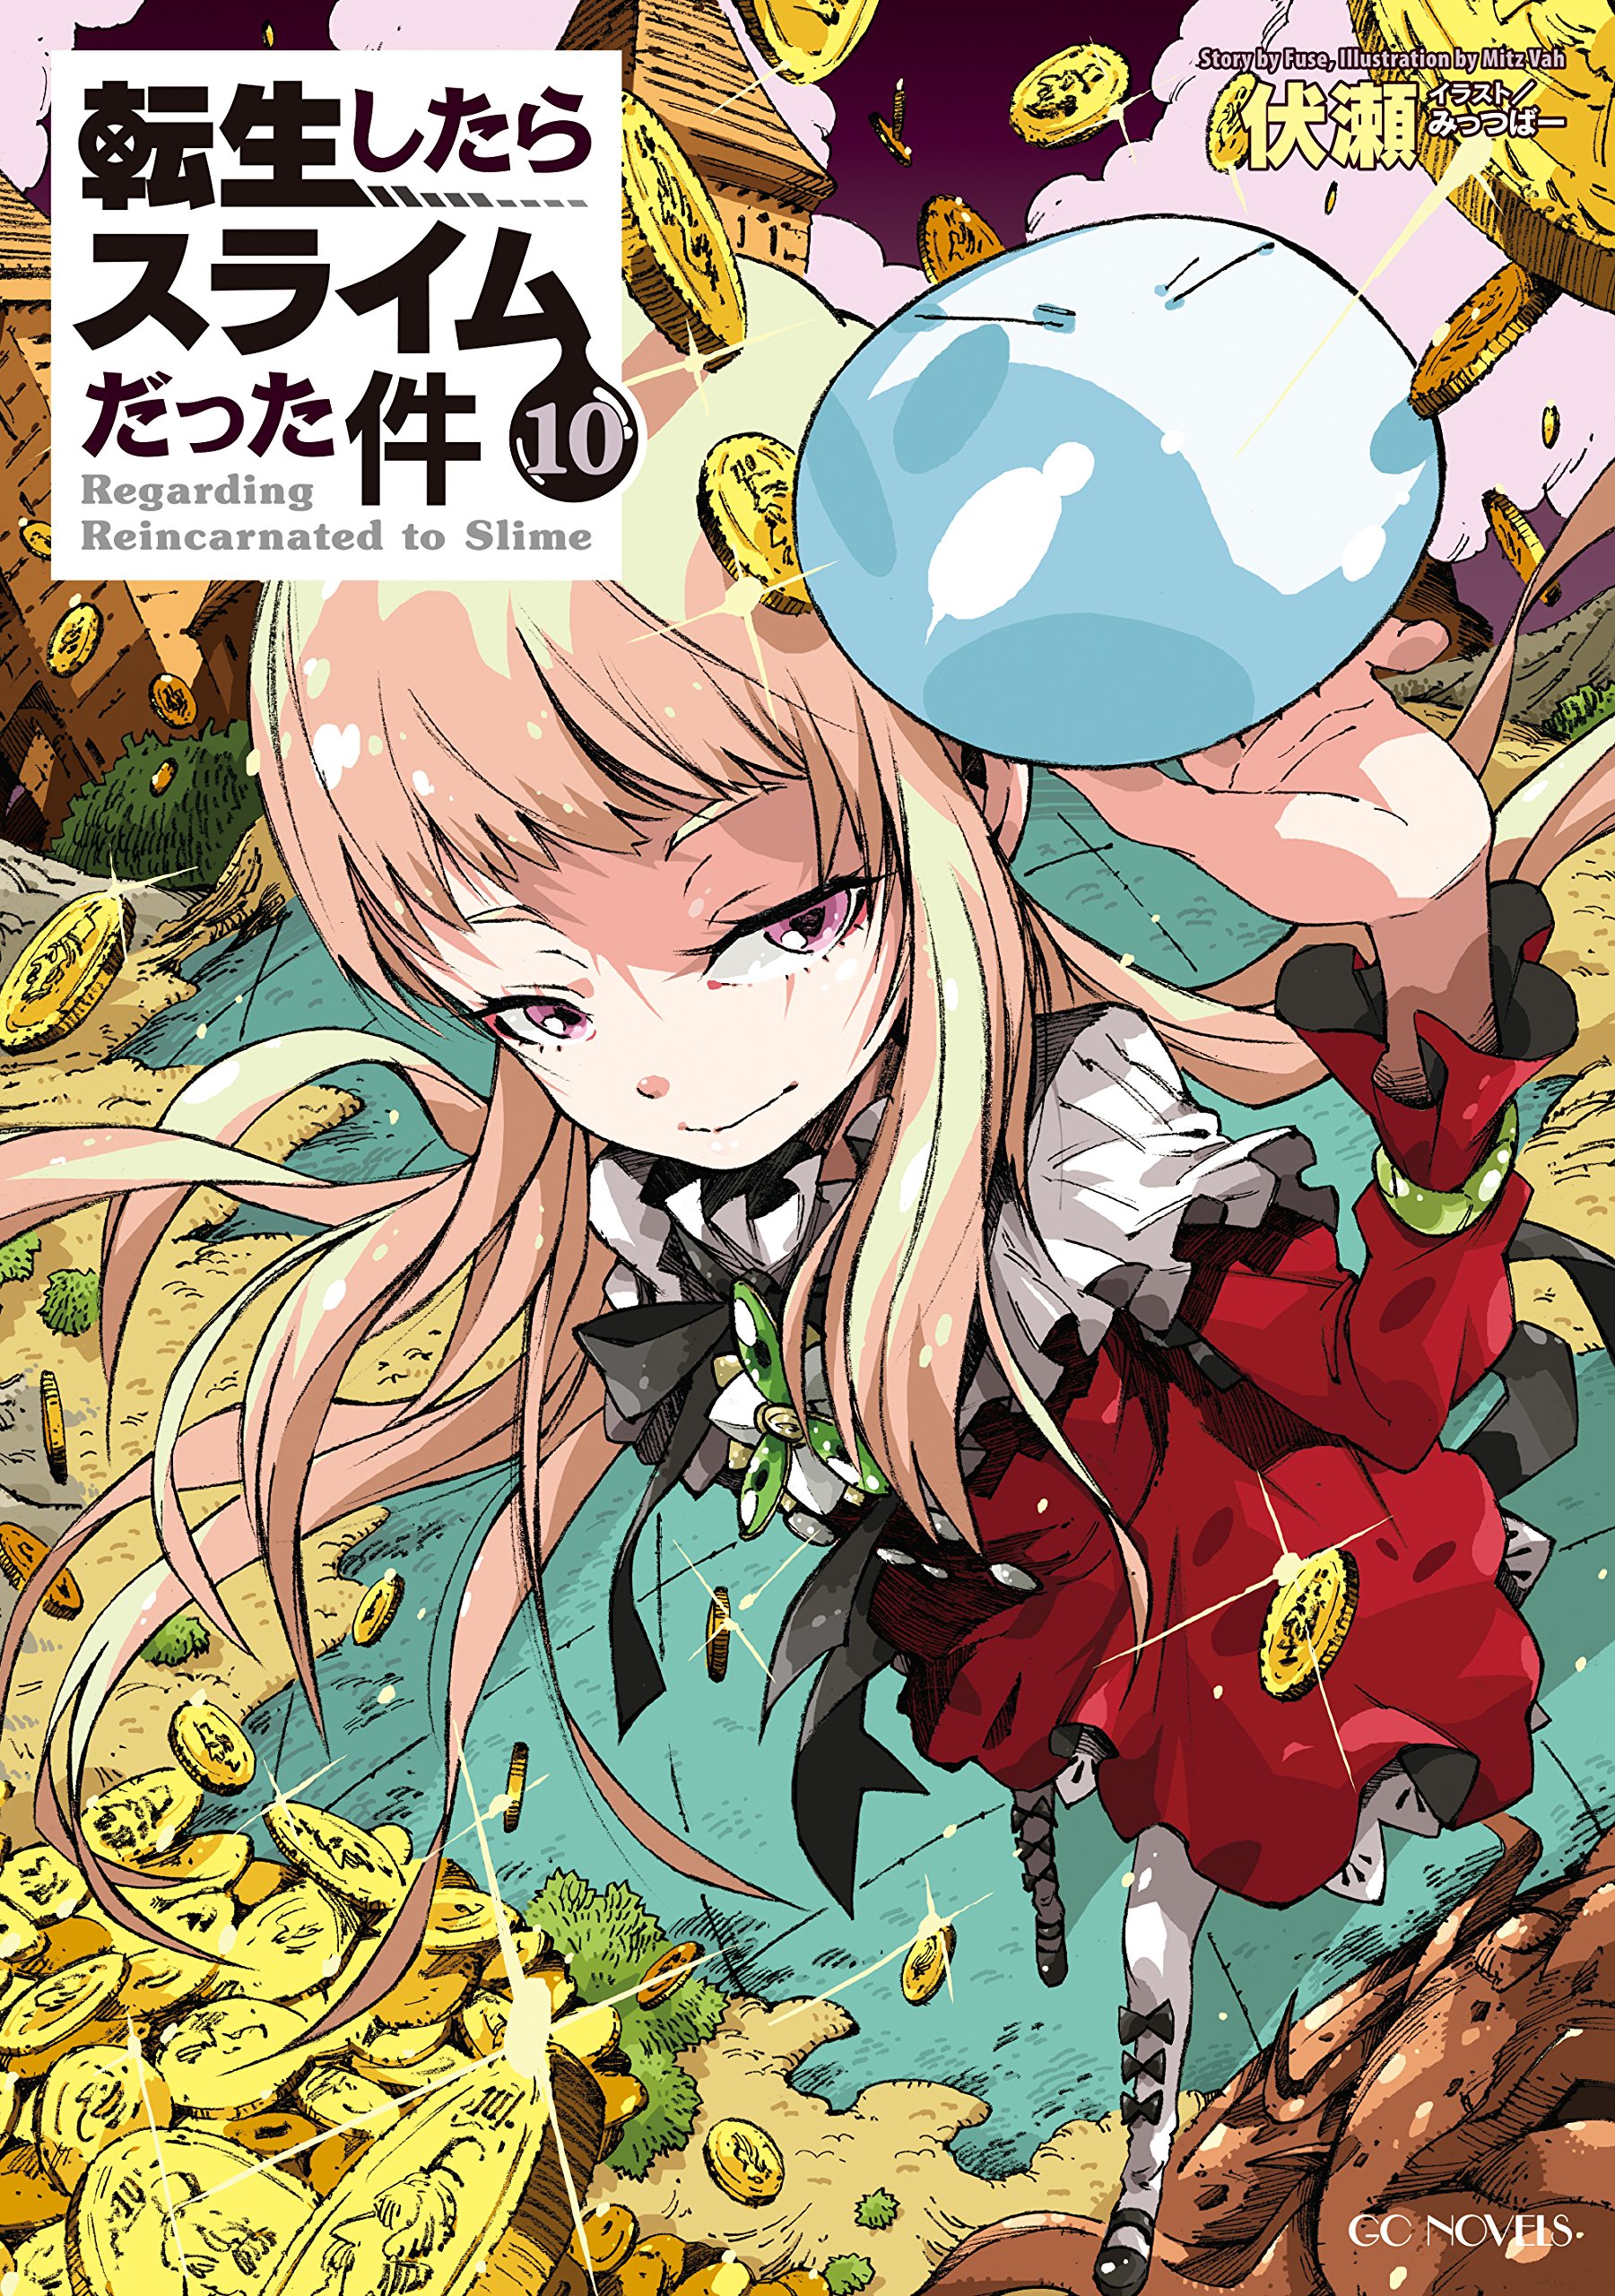 Tensei Shitara Slime Datta Ken (LN) - Novel Updates